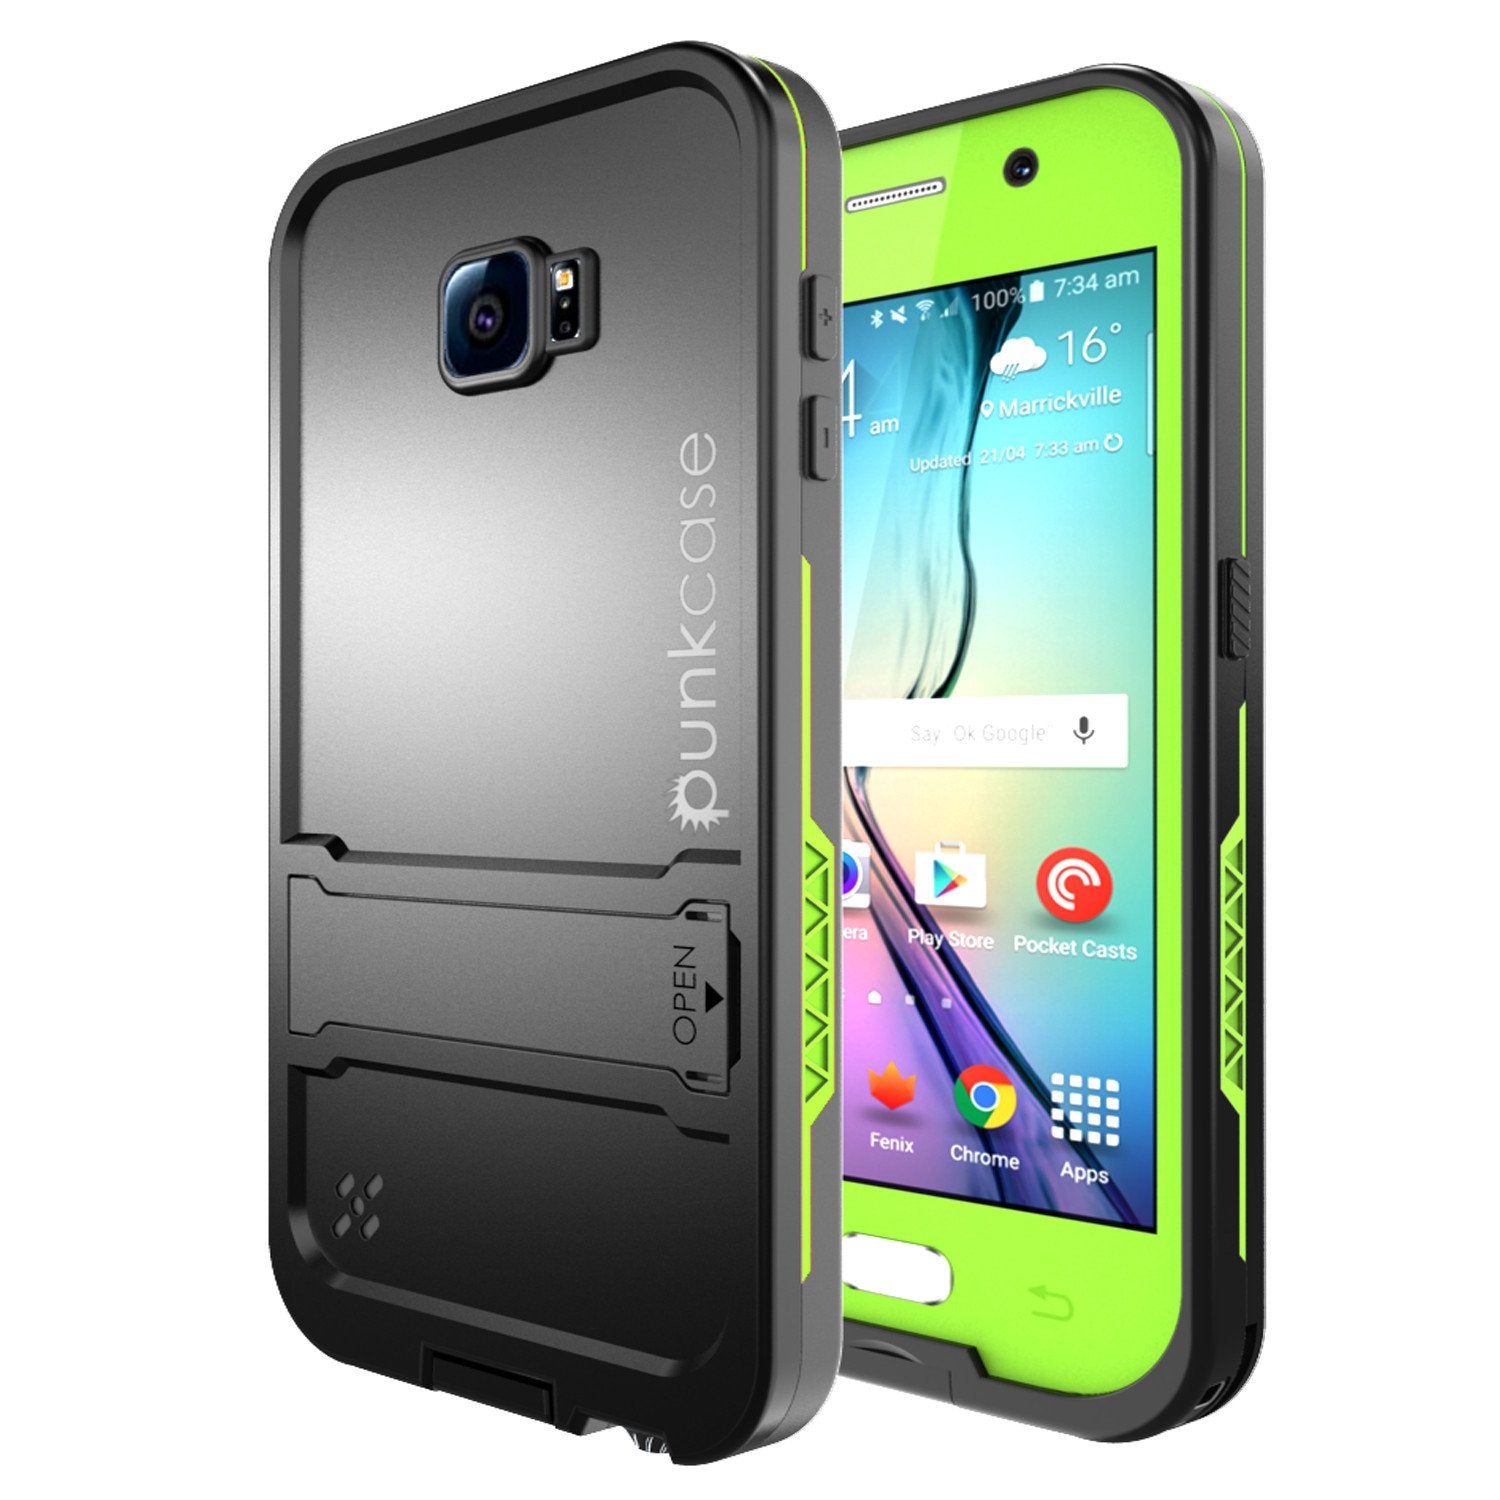 Galaxy S6 Waterproof Case, Punkcase SpikeStar Light Green Water/Shock/Dirt Proof | Lifetime Warranty